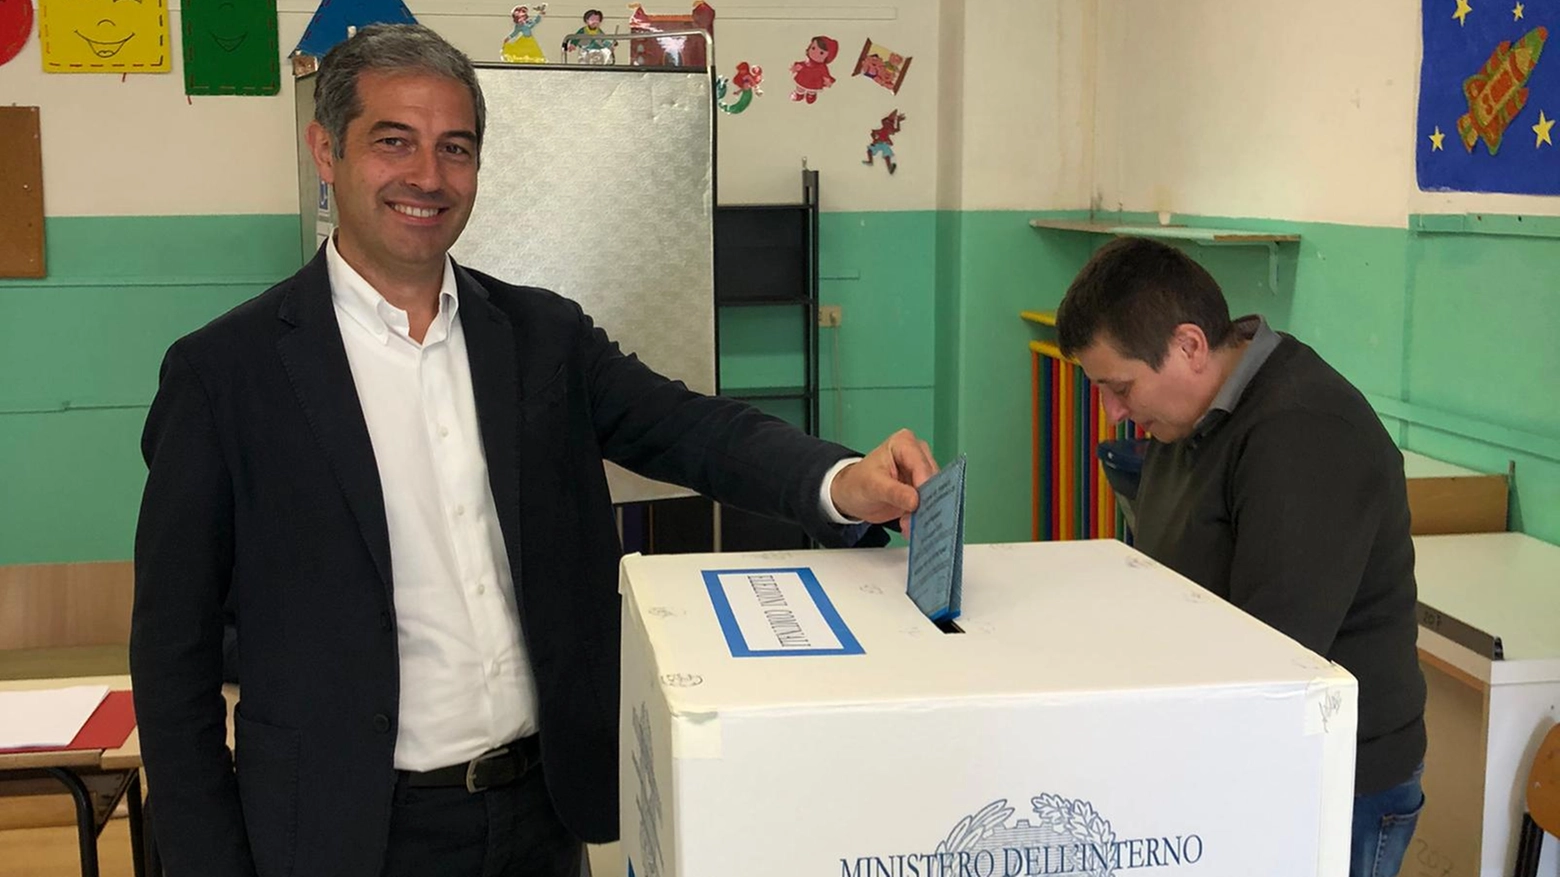 Il candidato del centrosinistra trionfa col 56,12% su Sprecacè (centrodestra) col 29,28%. In provincia già scelto il primo cittadino a Ripatransone (De Vincenzi) e a Castel di Lama (Bochicchio)